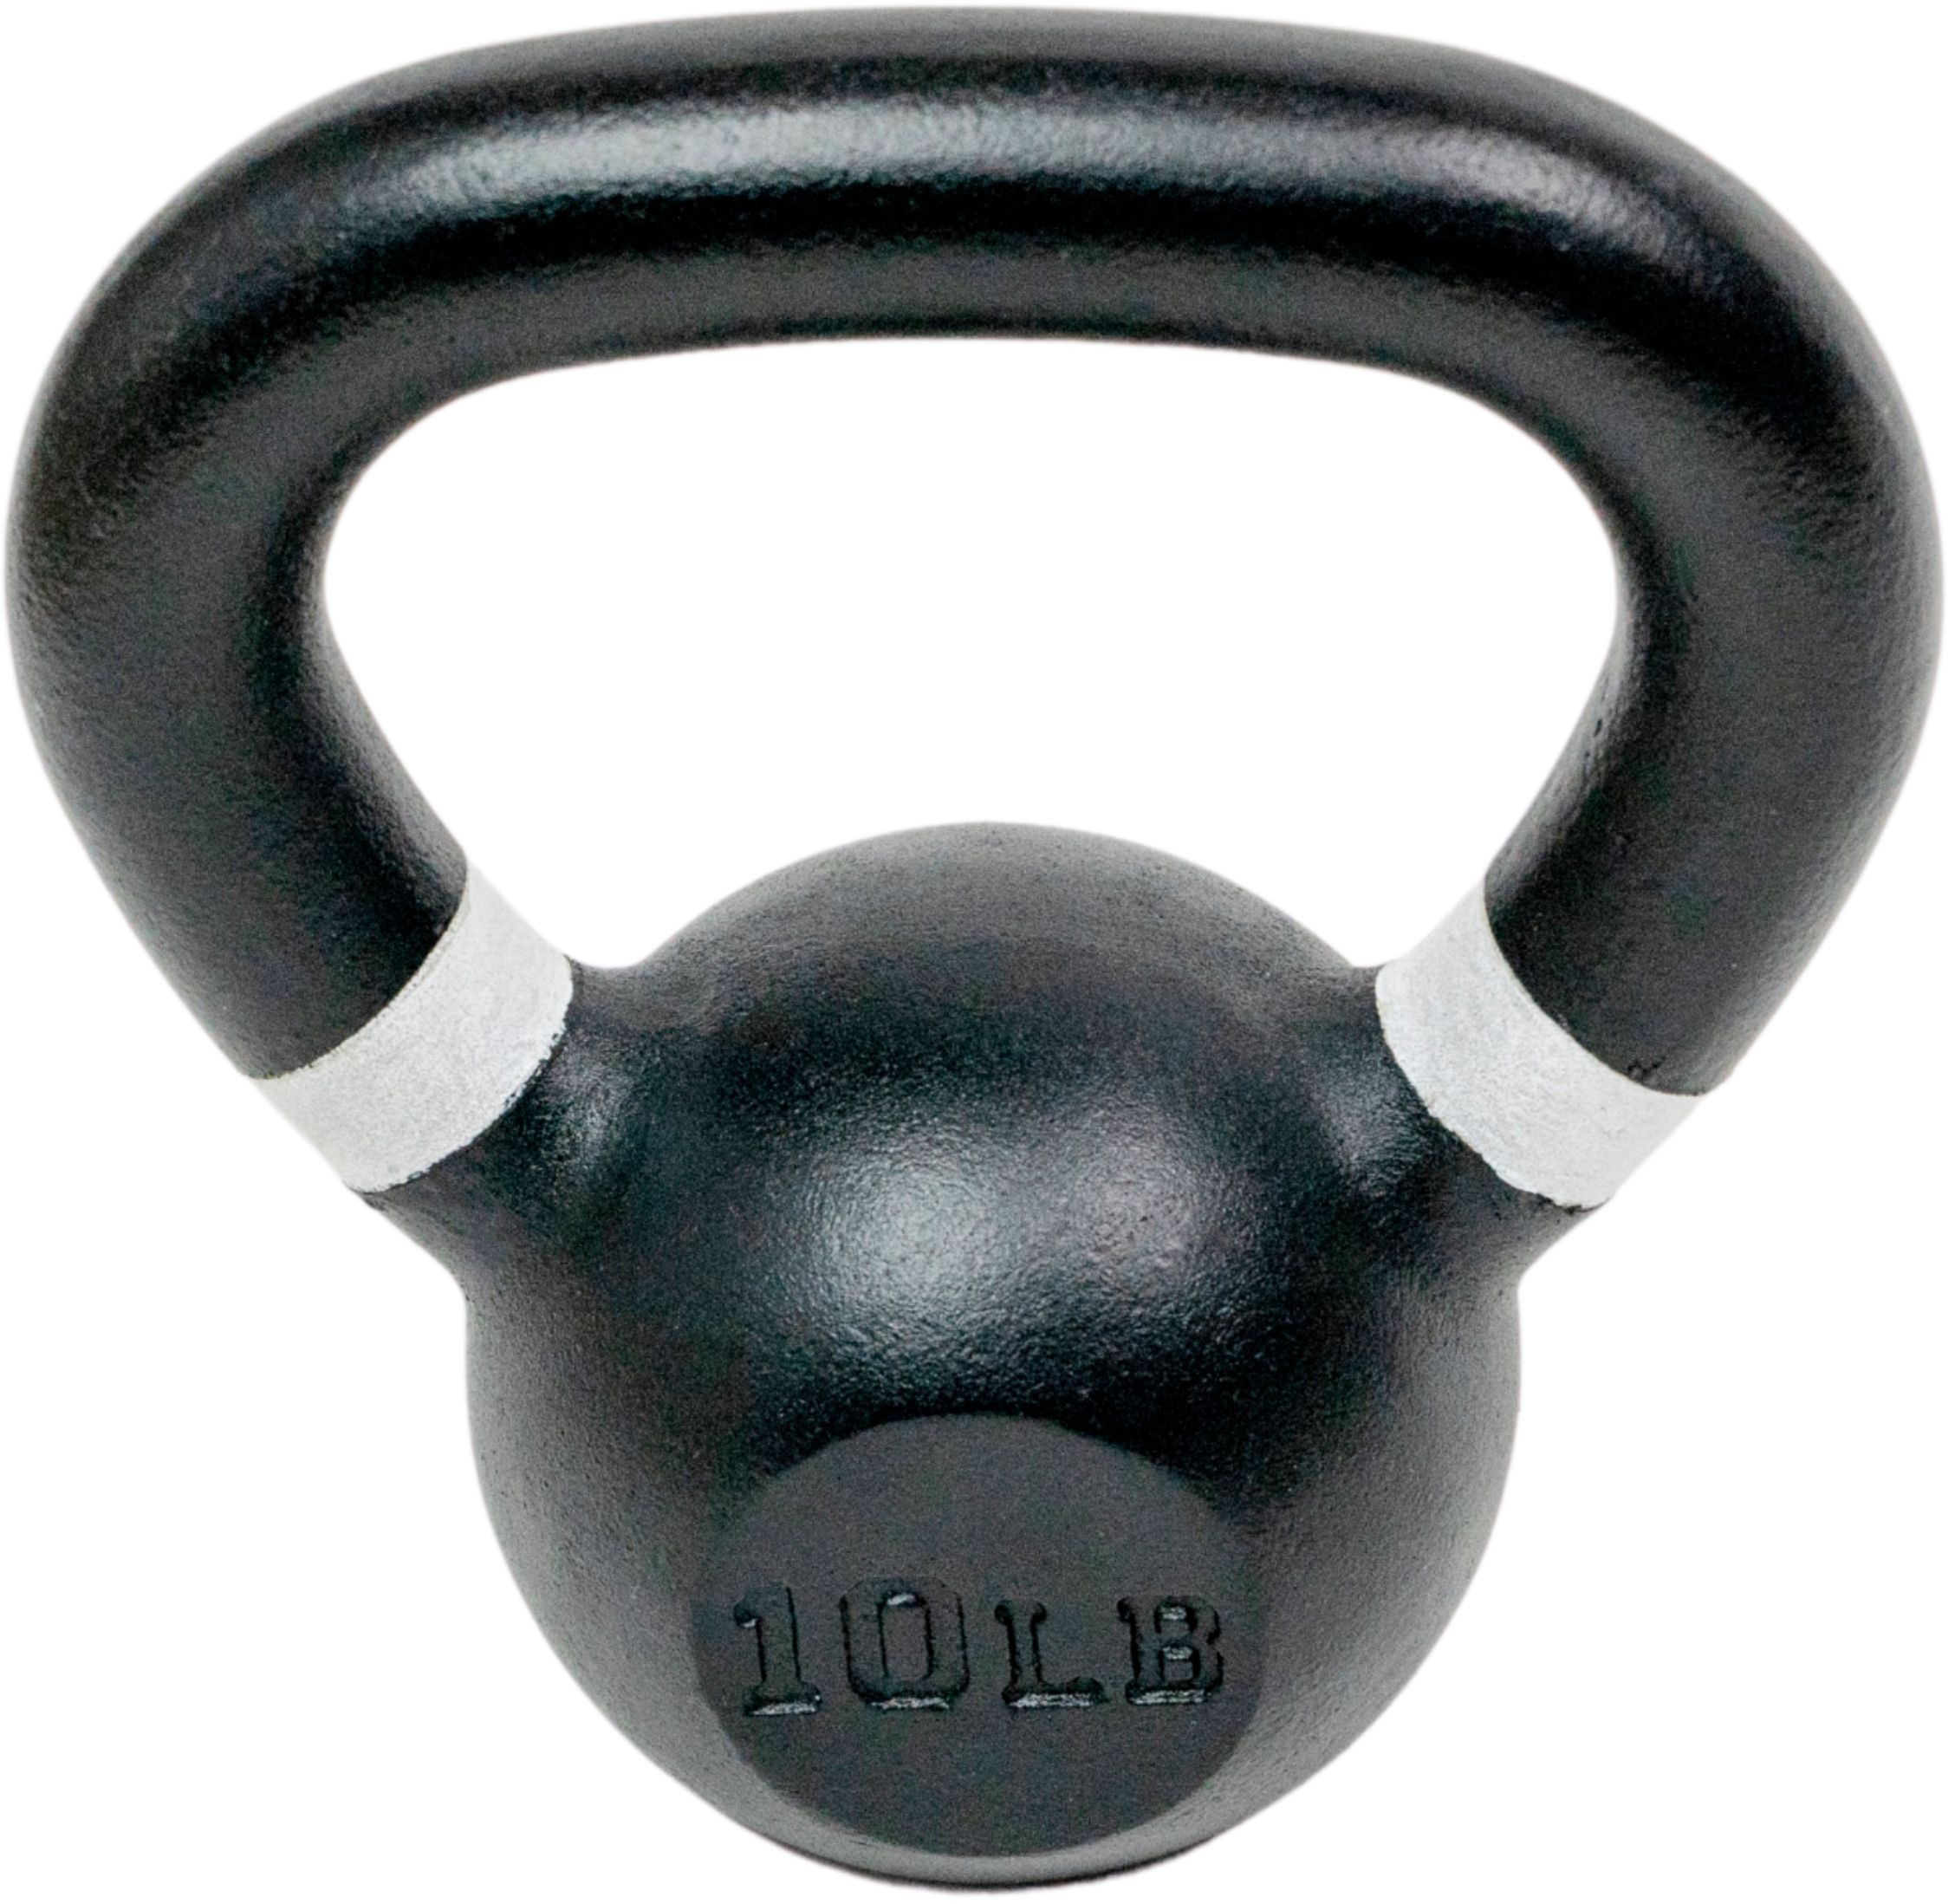 CAP Cast Iron Kettlebell 15 lb & 10lb Total Flat Bottom Pounds Gym Weights 